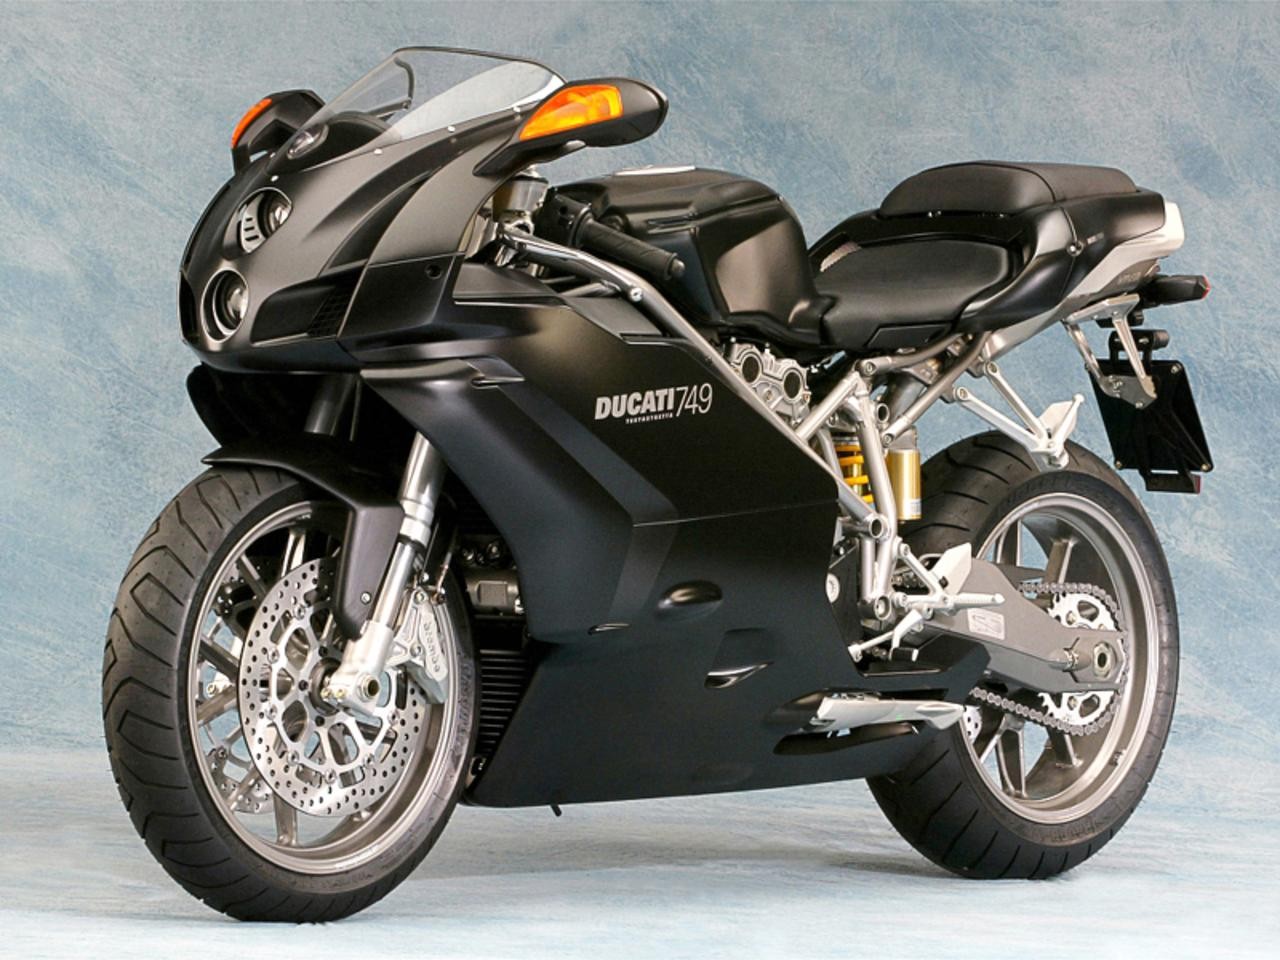 General 1280x960 Ducati motorcycle vehicle black motorcycles numbers Volkswagen Group Italian motorcycles